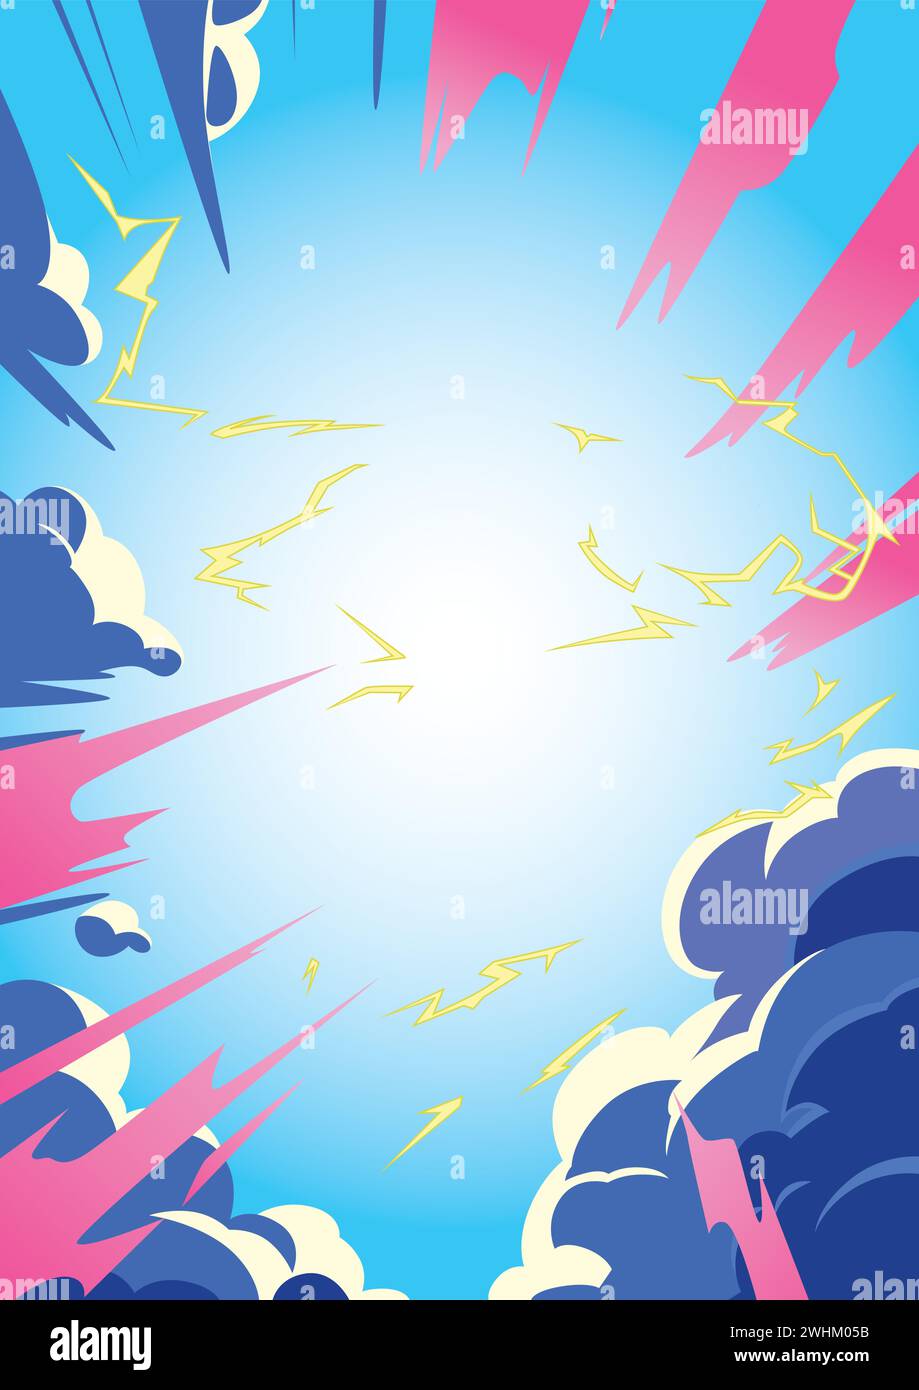 Illustrazione in stile anime di un cielo dinamico con flash elettrici e nuvole vivaci. Illustrazione Vettoriale